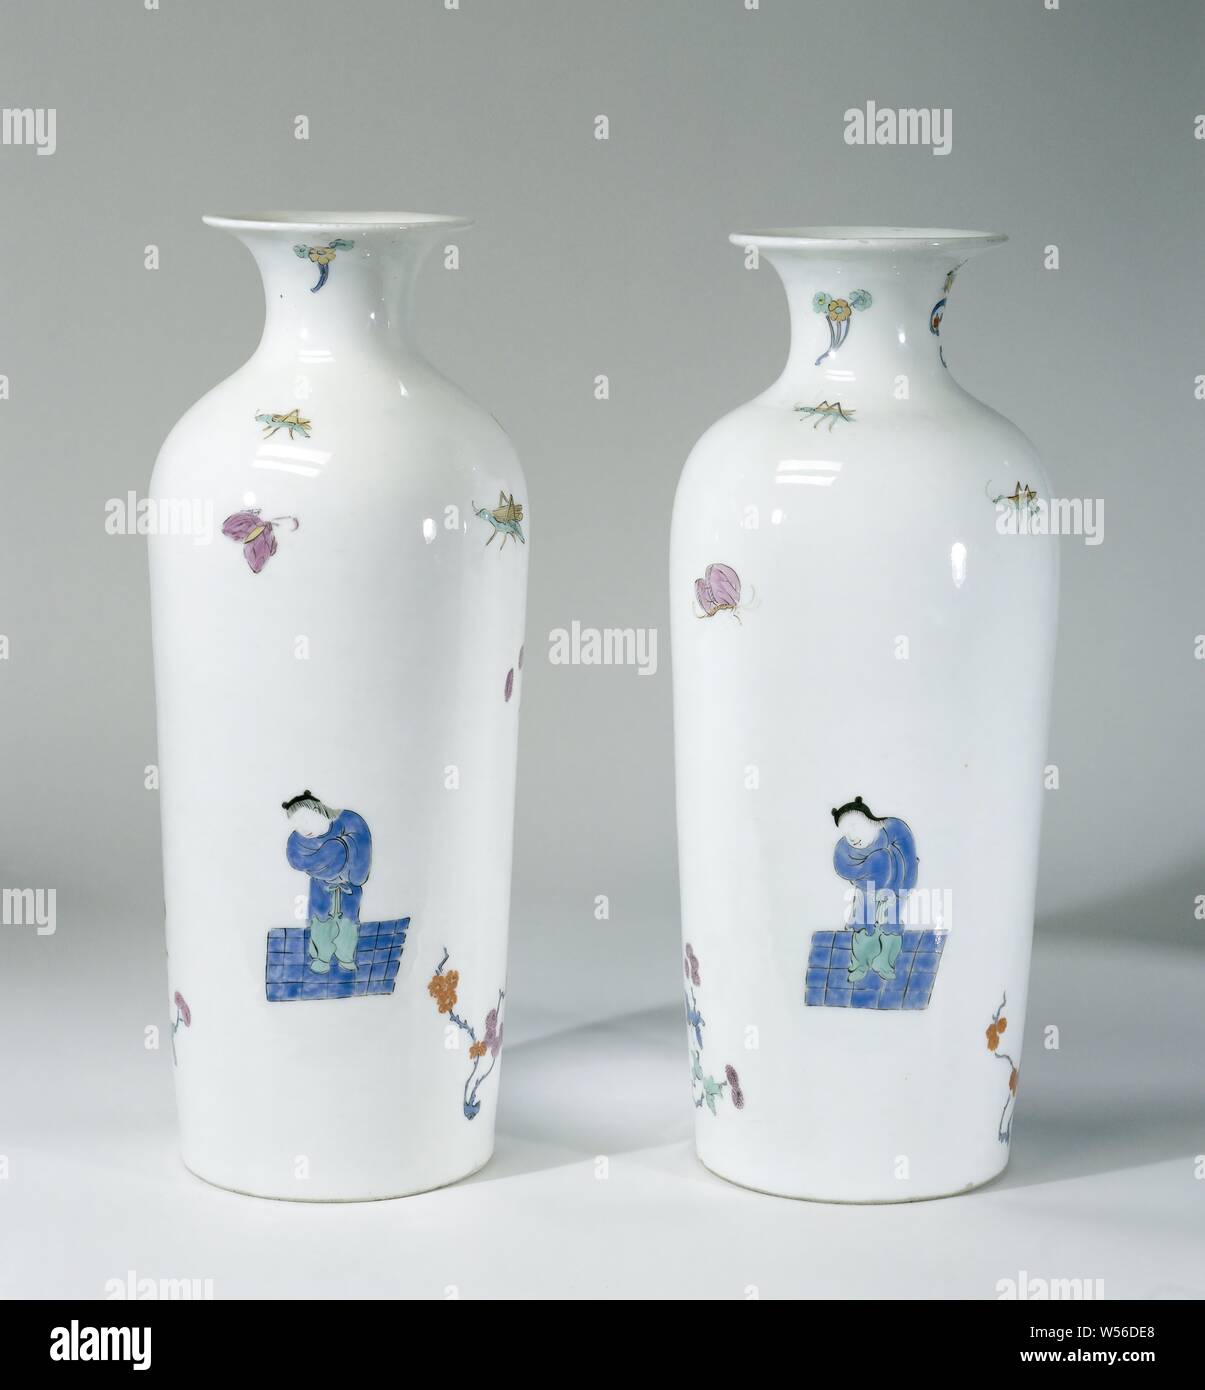 Vase, multi-couleur peint avec un décor Kakiemon, vase cylindrique en porcelaine peinte. Le vase est décoré avec un garçon en vert et bleu debout sur un sol bleu à carreaux, un bouquet de fleurs en bleu et violet attachées ensemble avec un ruban bleu et vert Kylin. Le fond est non. Le vase n'est pas marquée., Meissener Porzellan Manufaktur, Meissen, ch. 1725 - c. 1730, porcelaine (matériau), h 29,2 cm × d 11,6 cm Banque D'Images